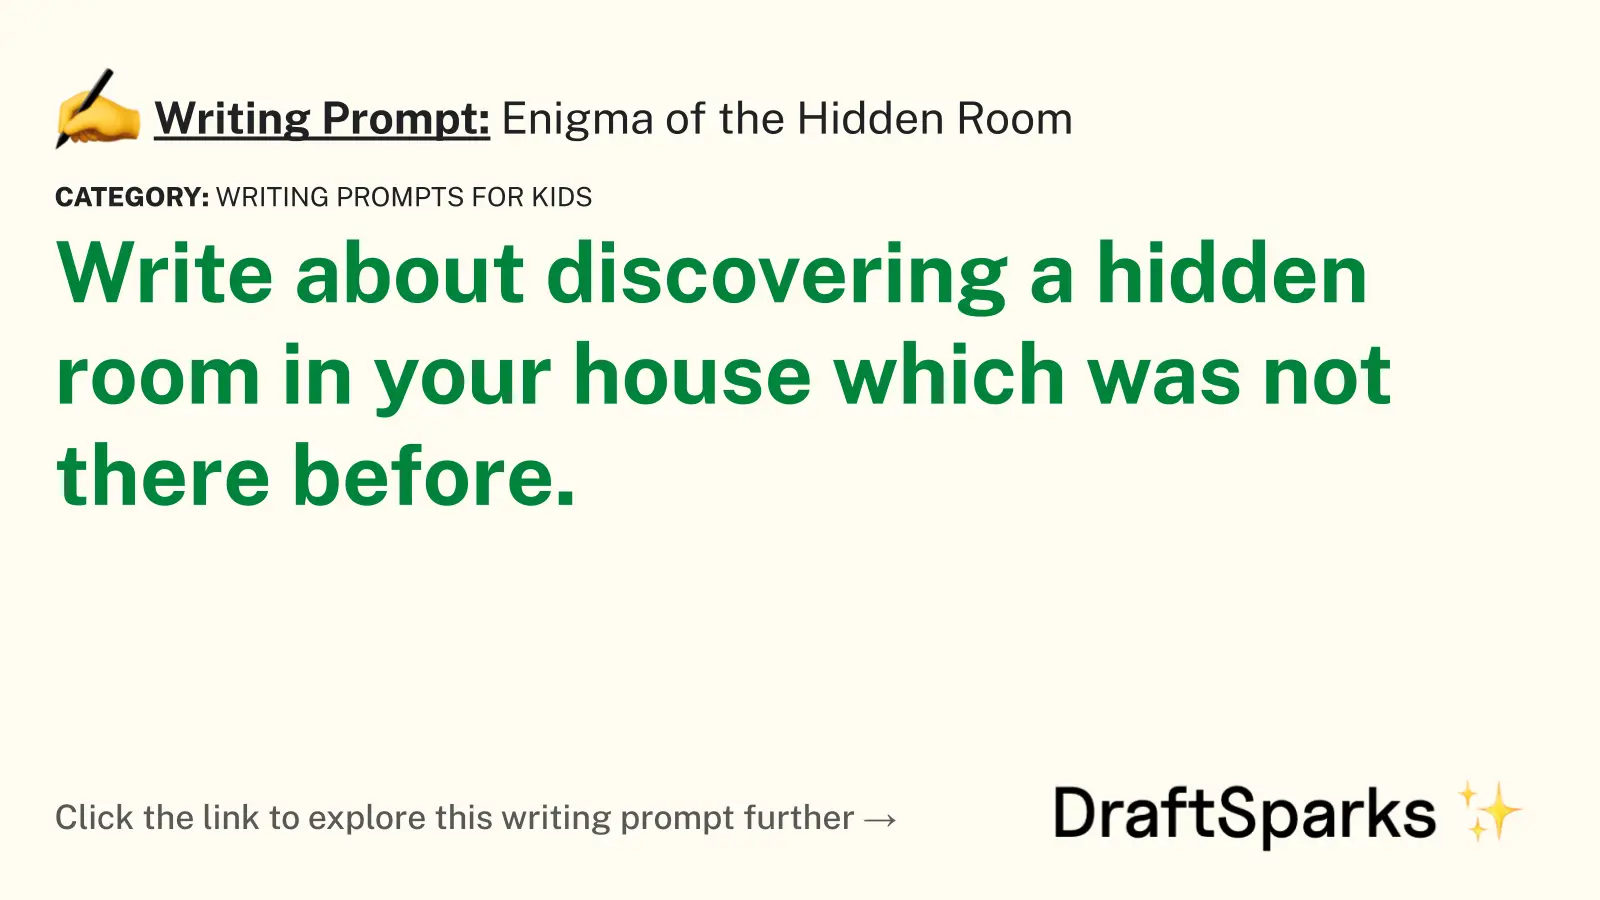 Enigma of the Hidden Room